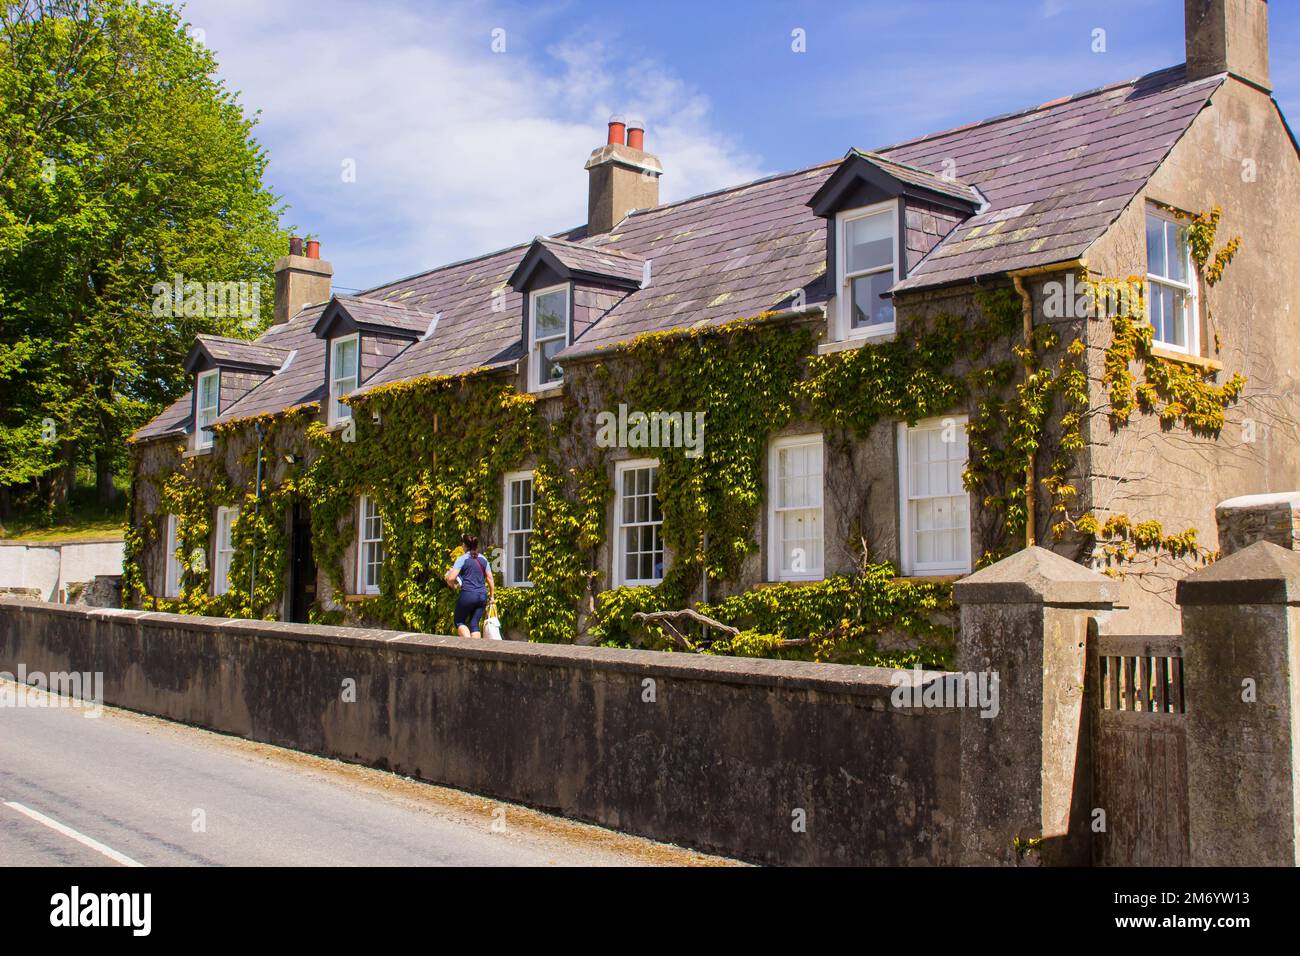 31 maggio 2020 la Lakehouse alloggio parte del restaurato 18th ° secolo Ballyduggan Mill complesso a Ballynahinch, nella contea di Down Irlanda del Nord Foto Stock